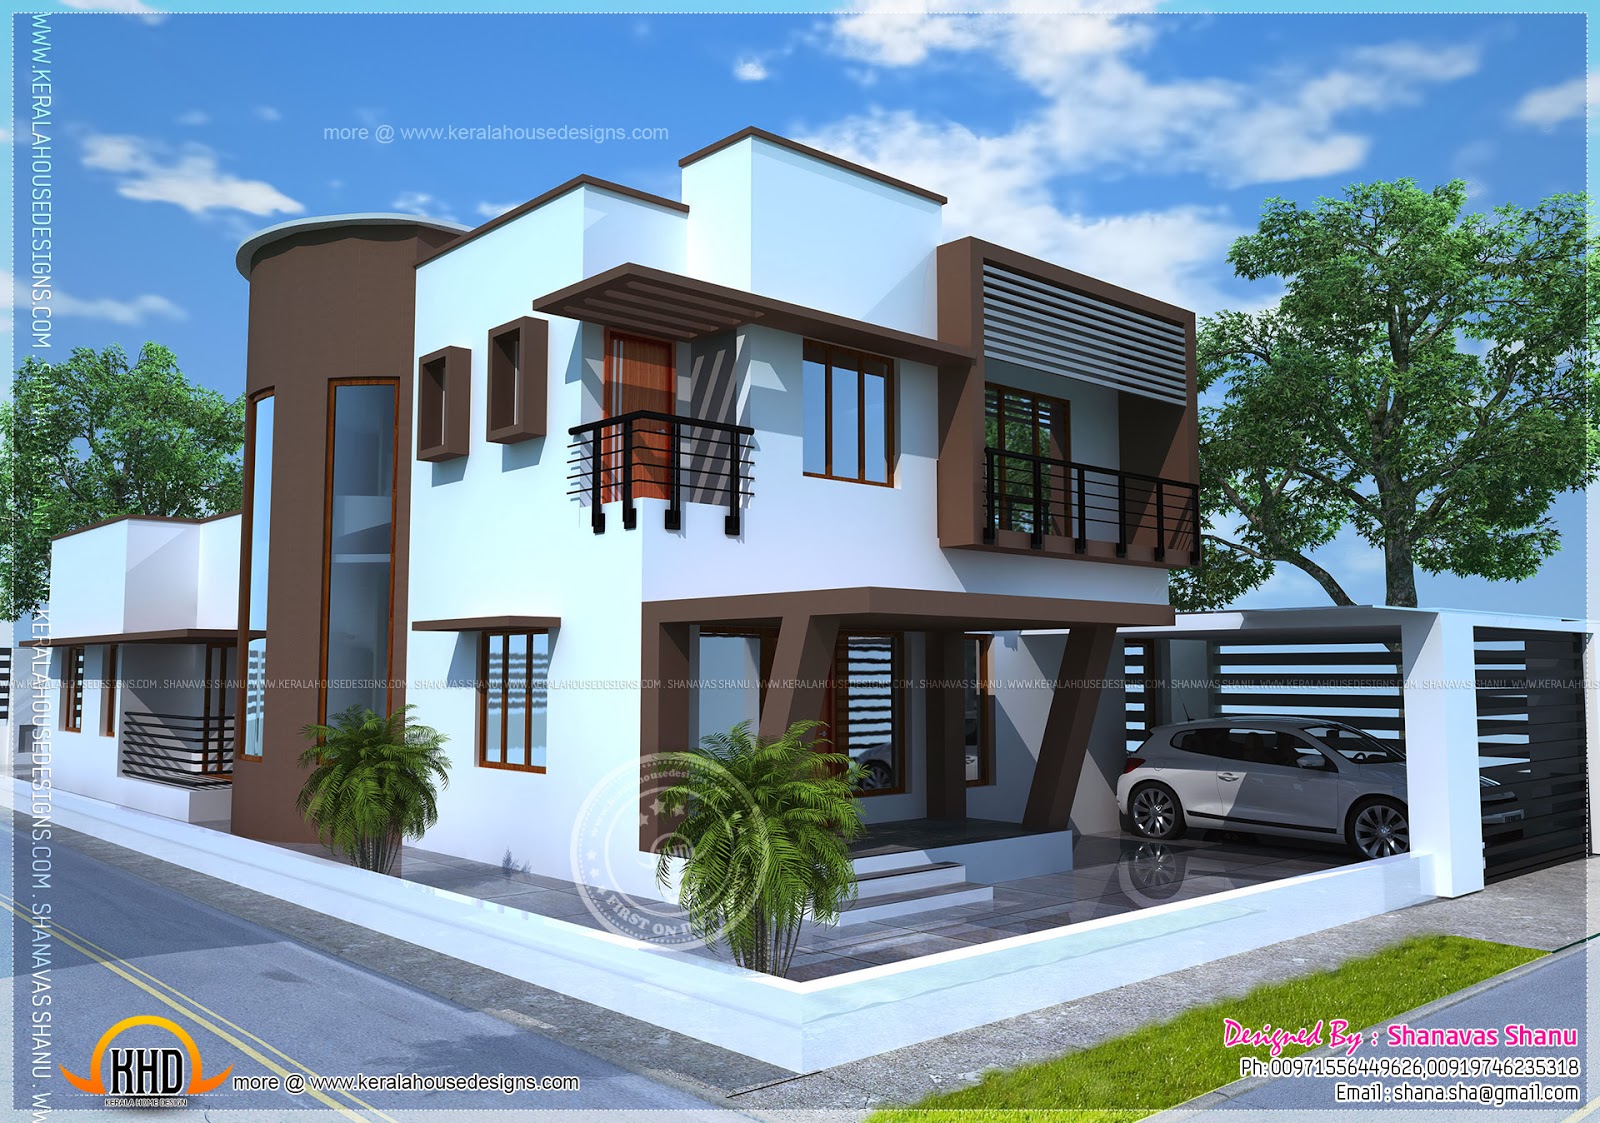 iBeautifuli icontemporaryi ihomei plan Kerala ihomei design and 